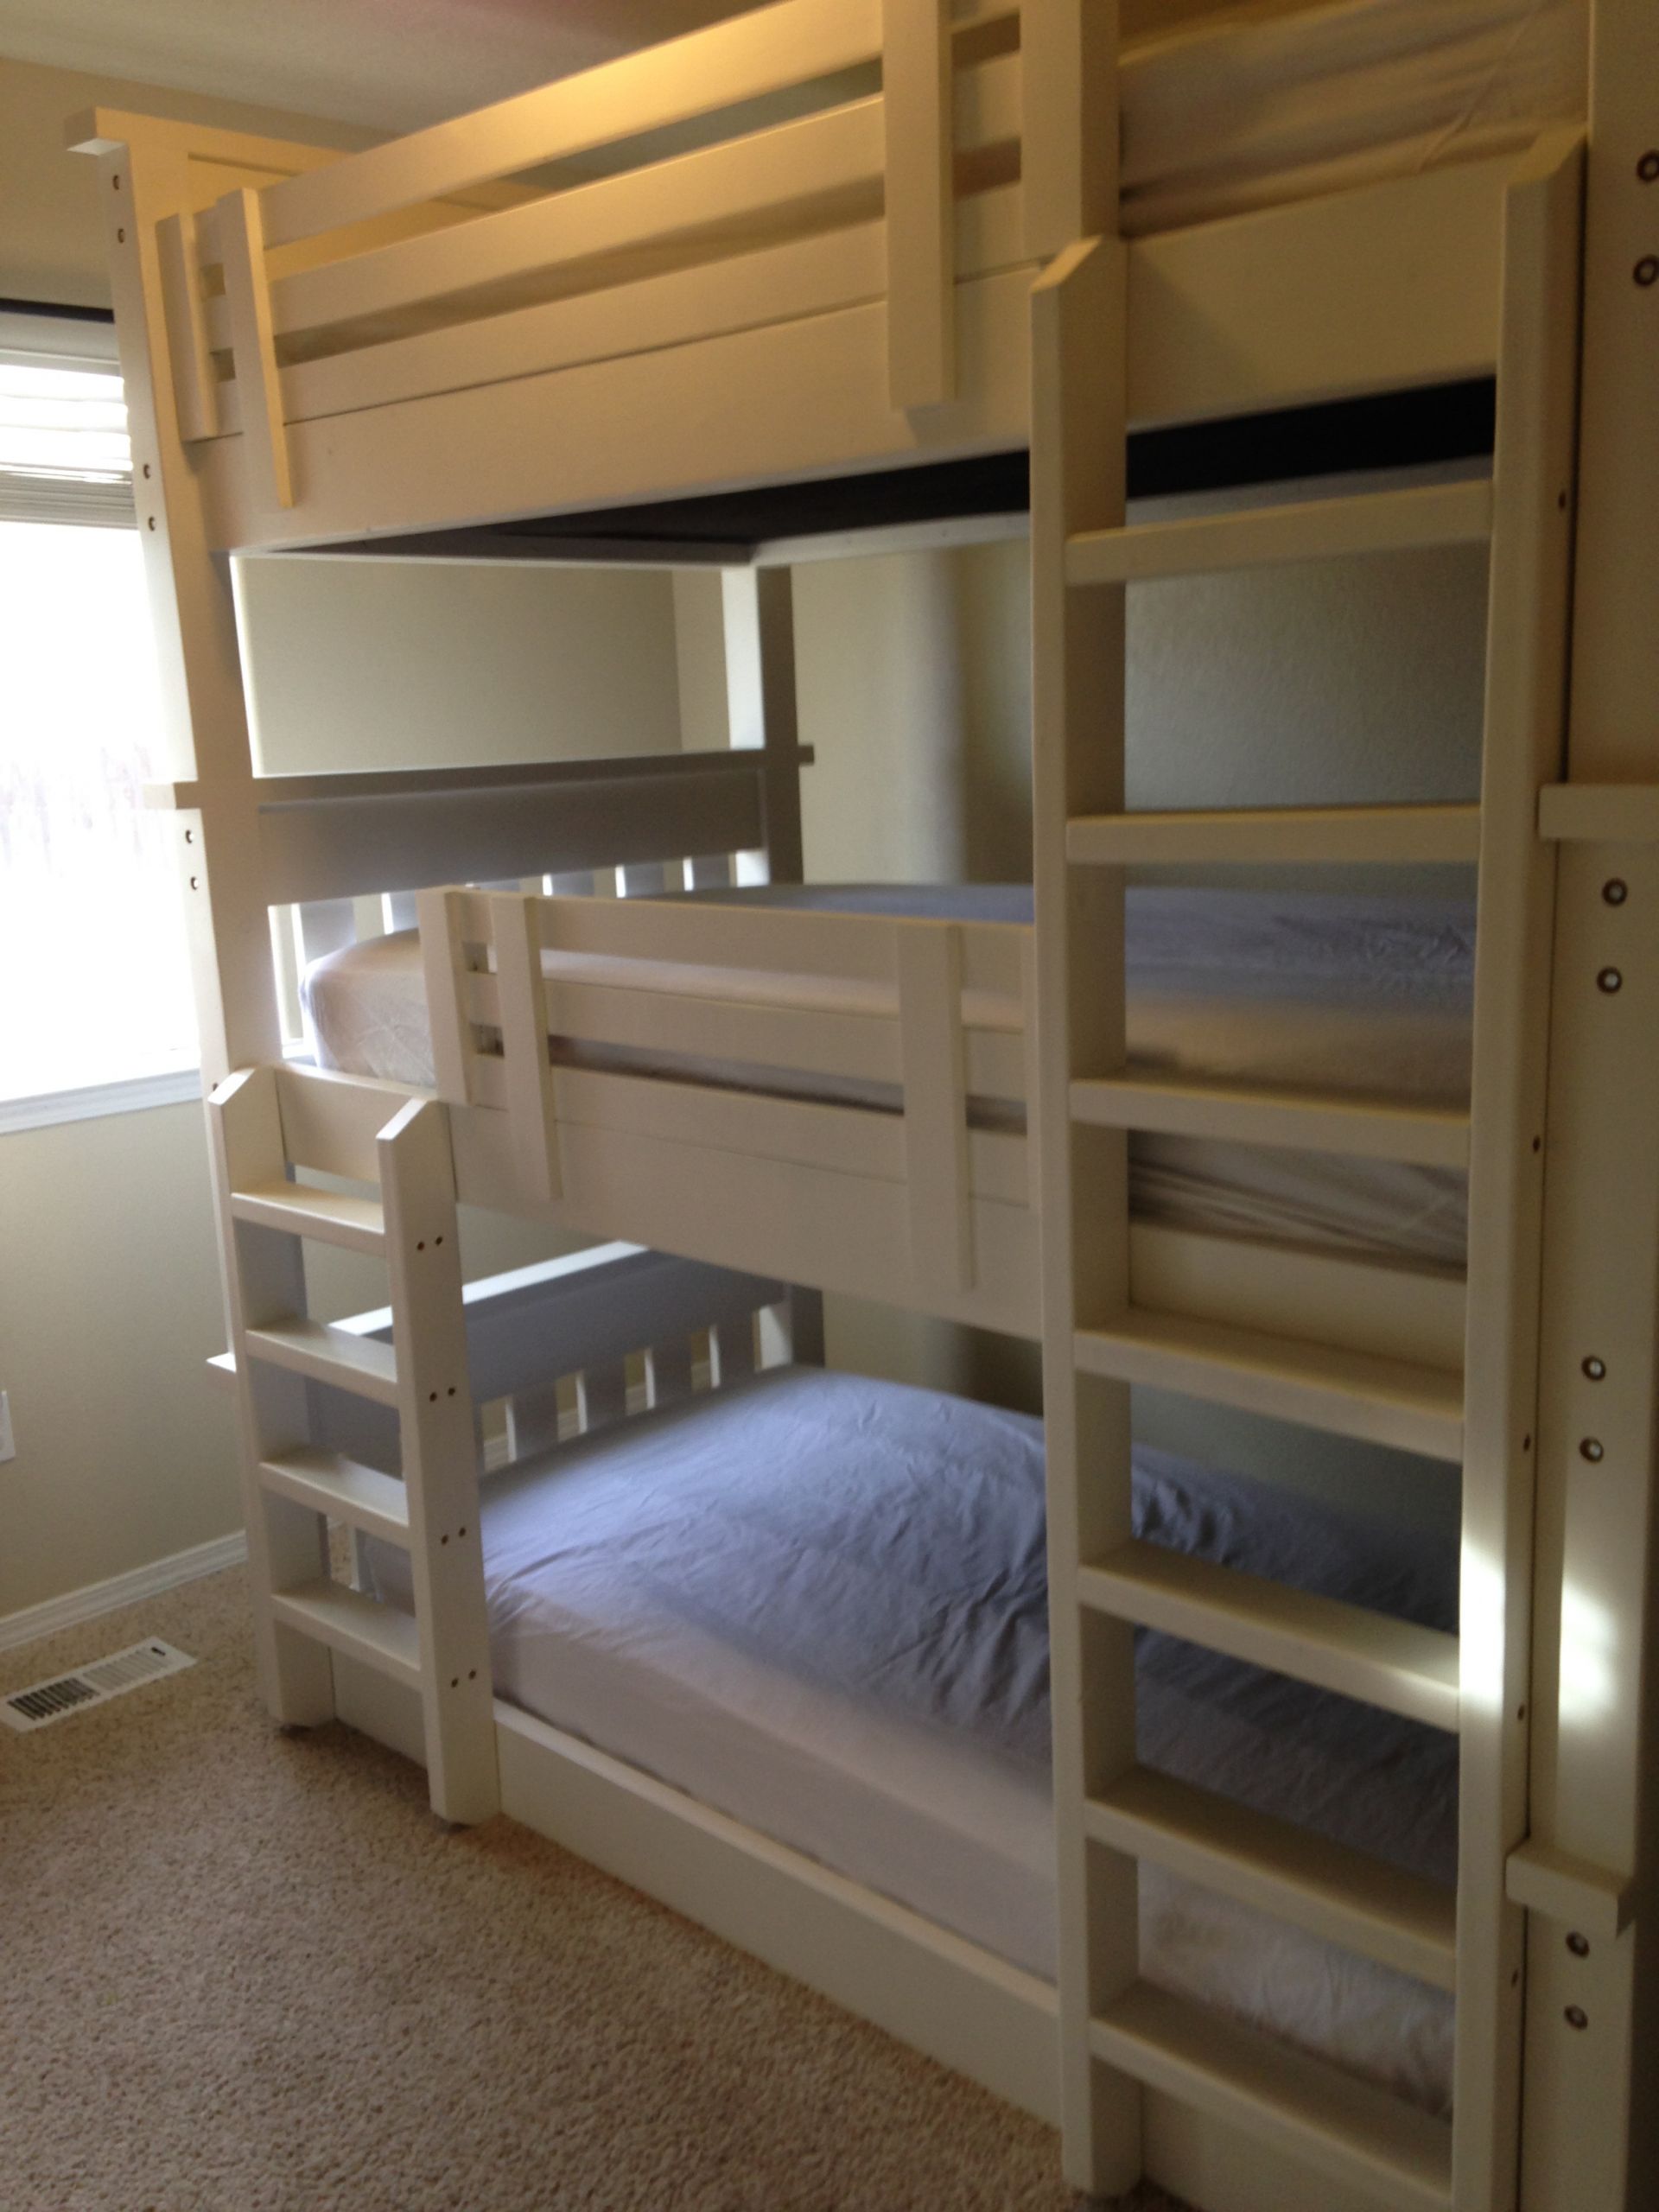 DIY Triple Bunk Bed Plans
 Ana White